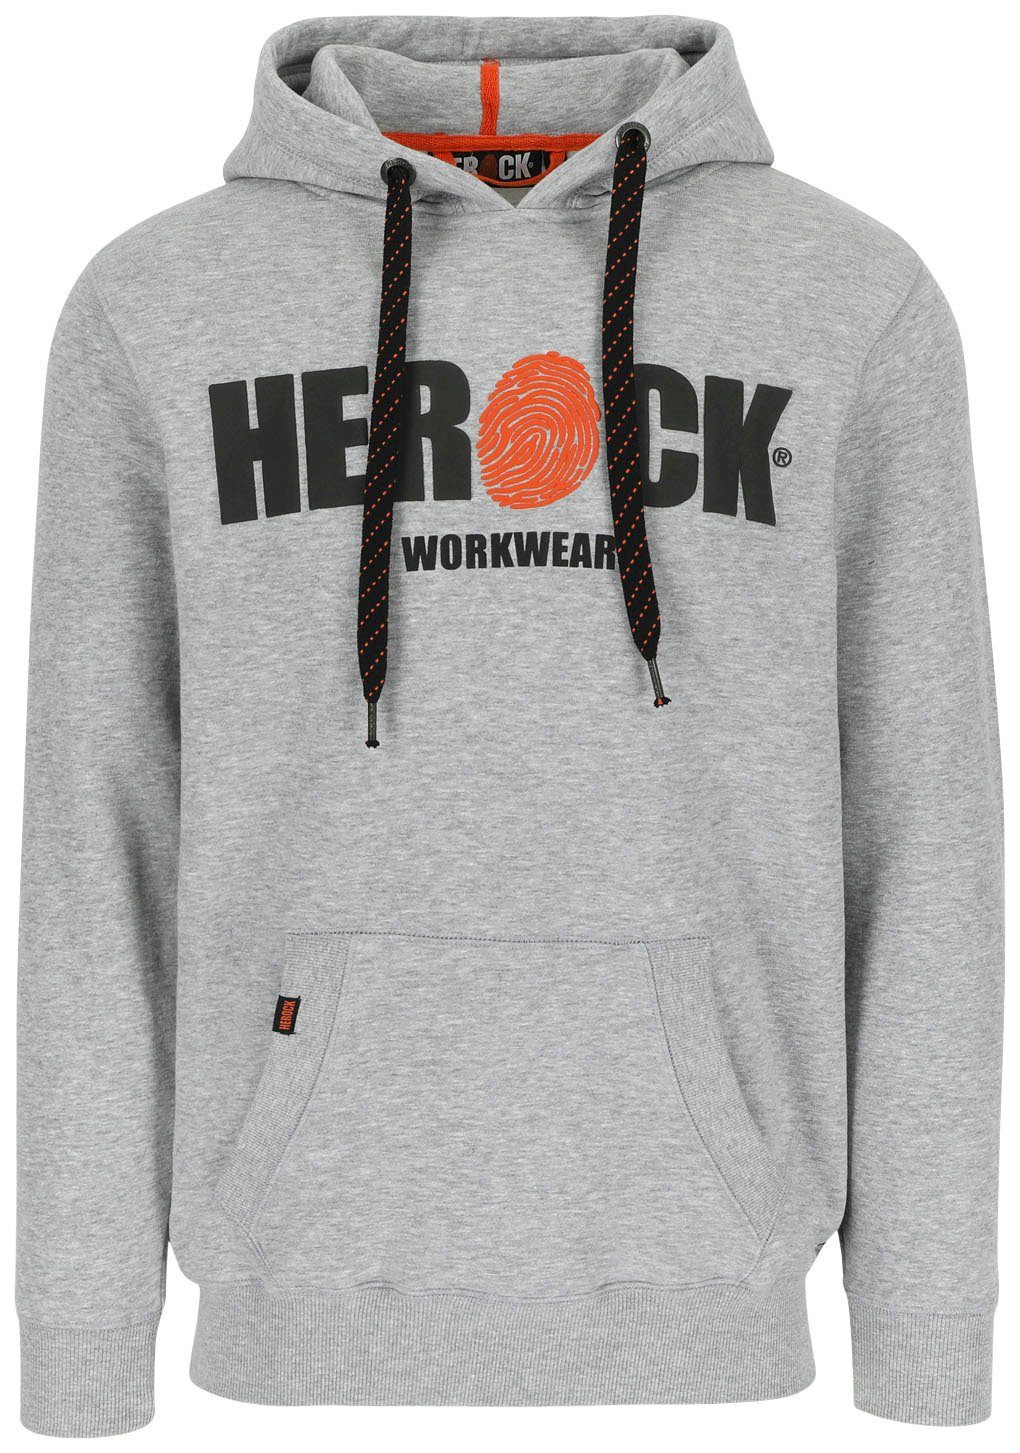 Herock Hoodie HERO Mit Herock®-Aufdruck, Kangurutasche, sehr angenehm und weich grau